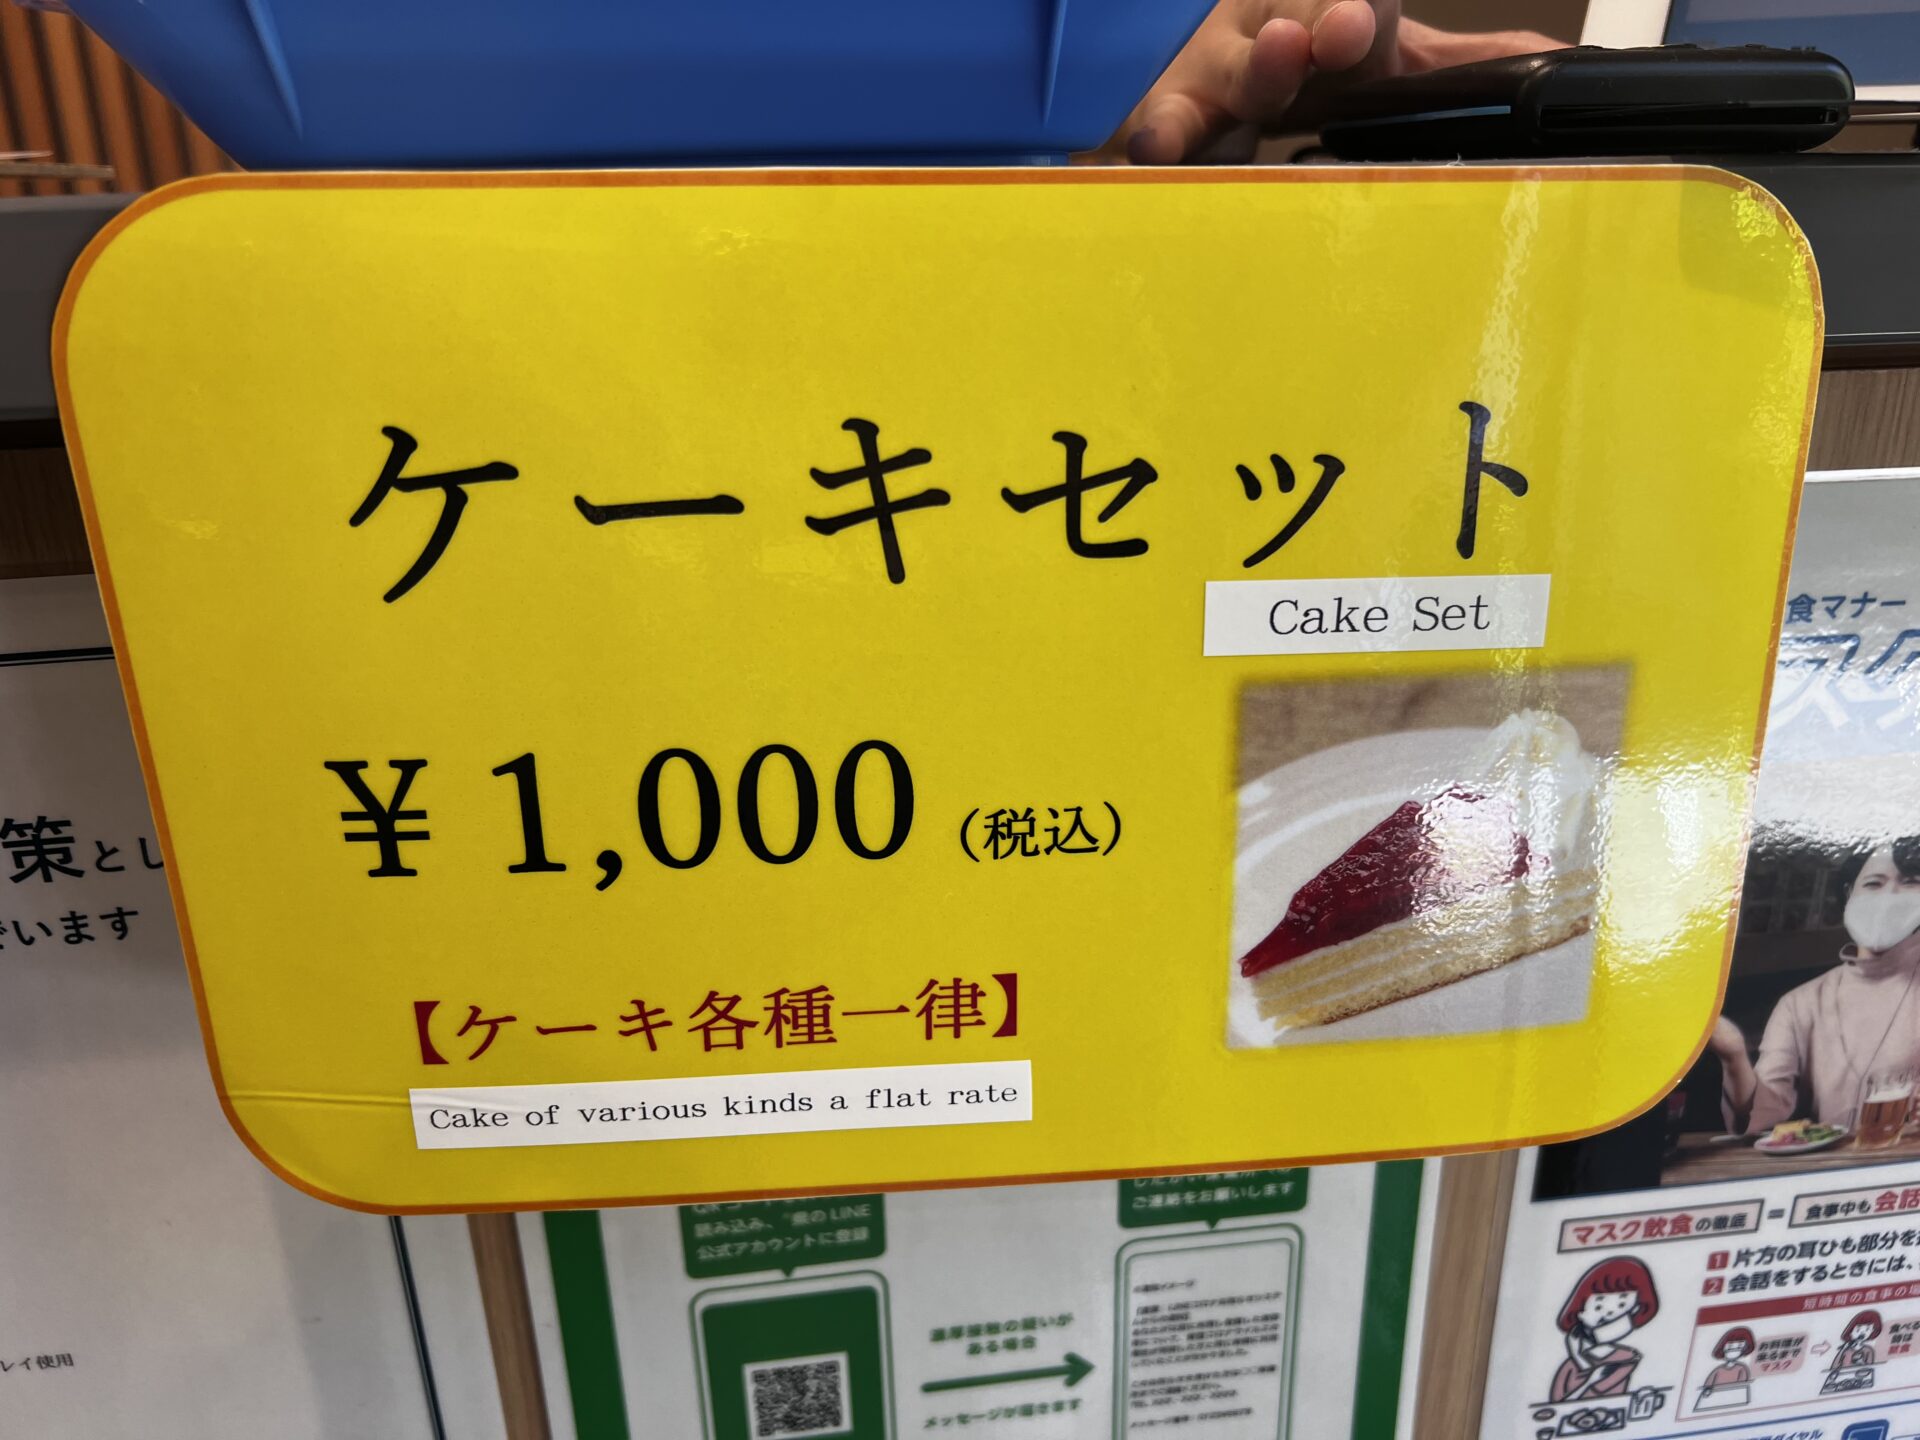 ビストロ ココネ鎌倉店 ケーキセット